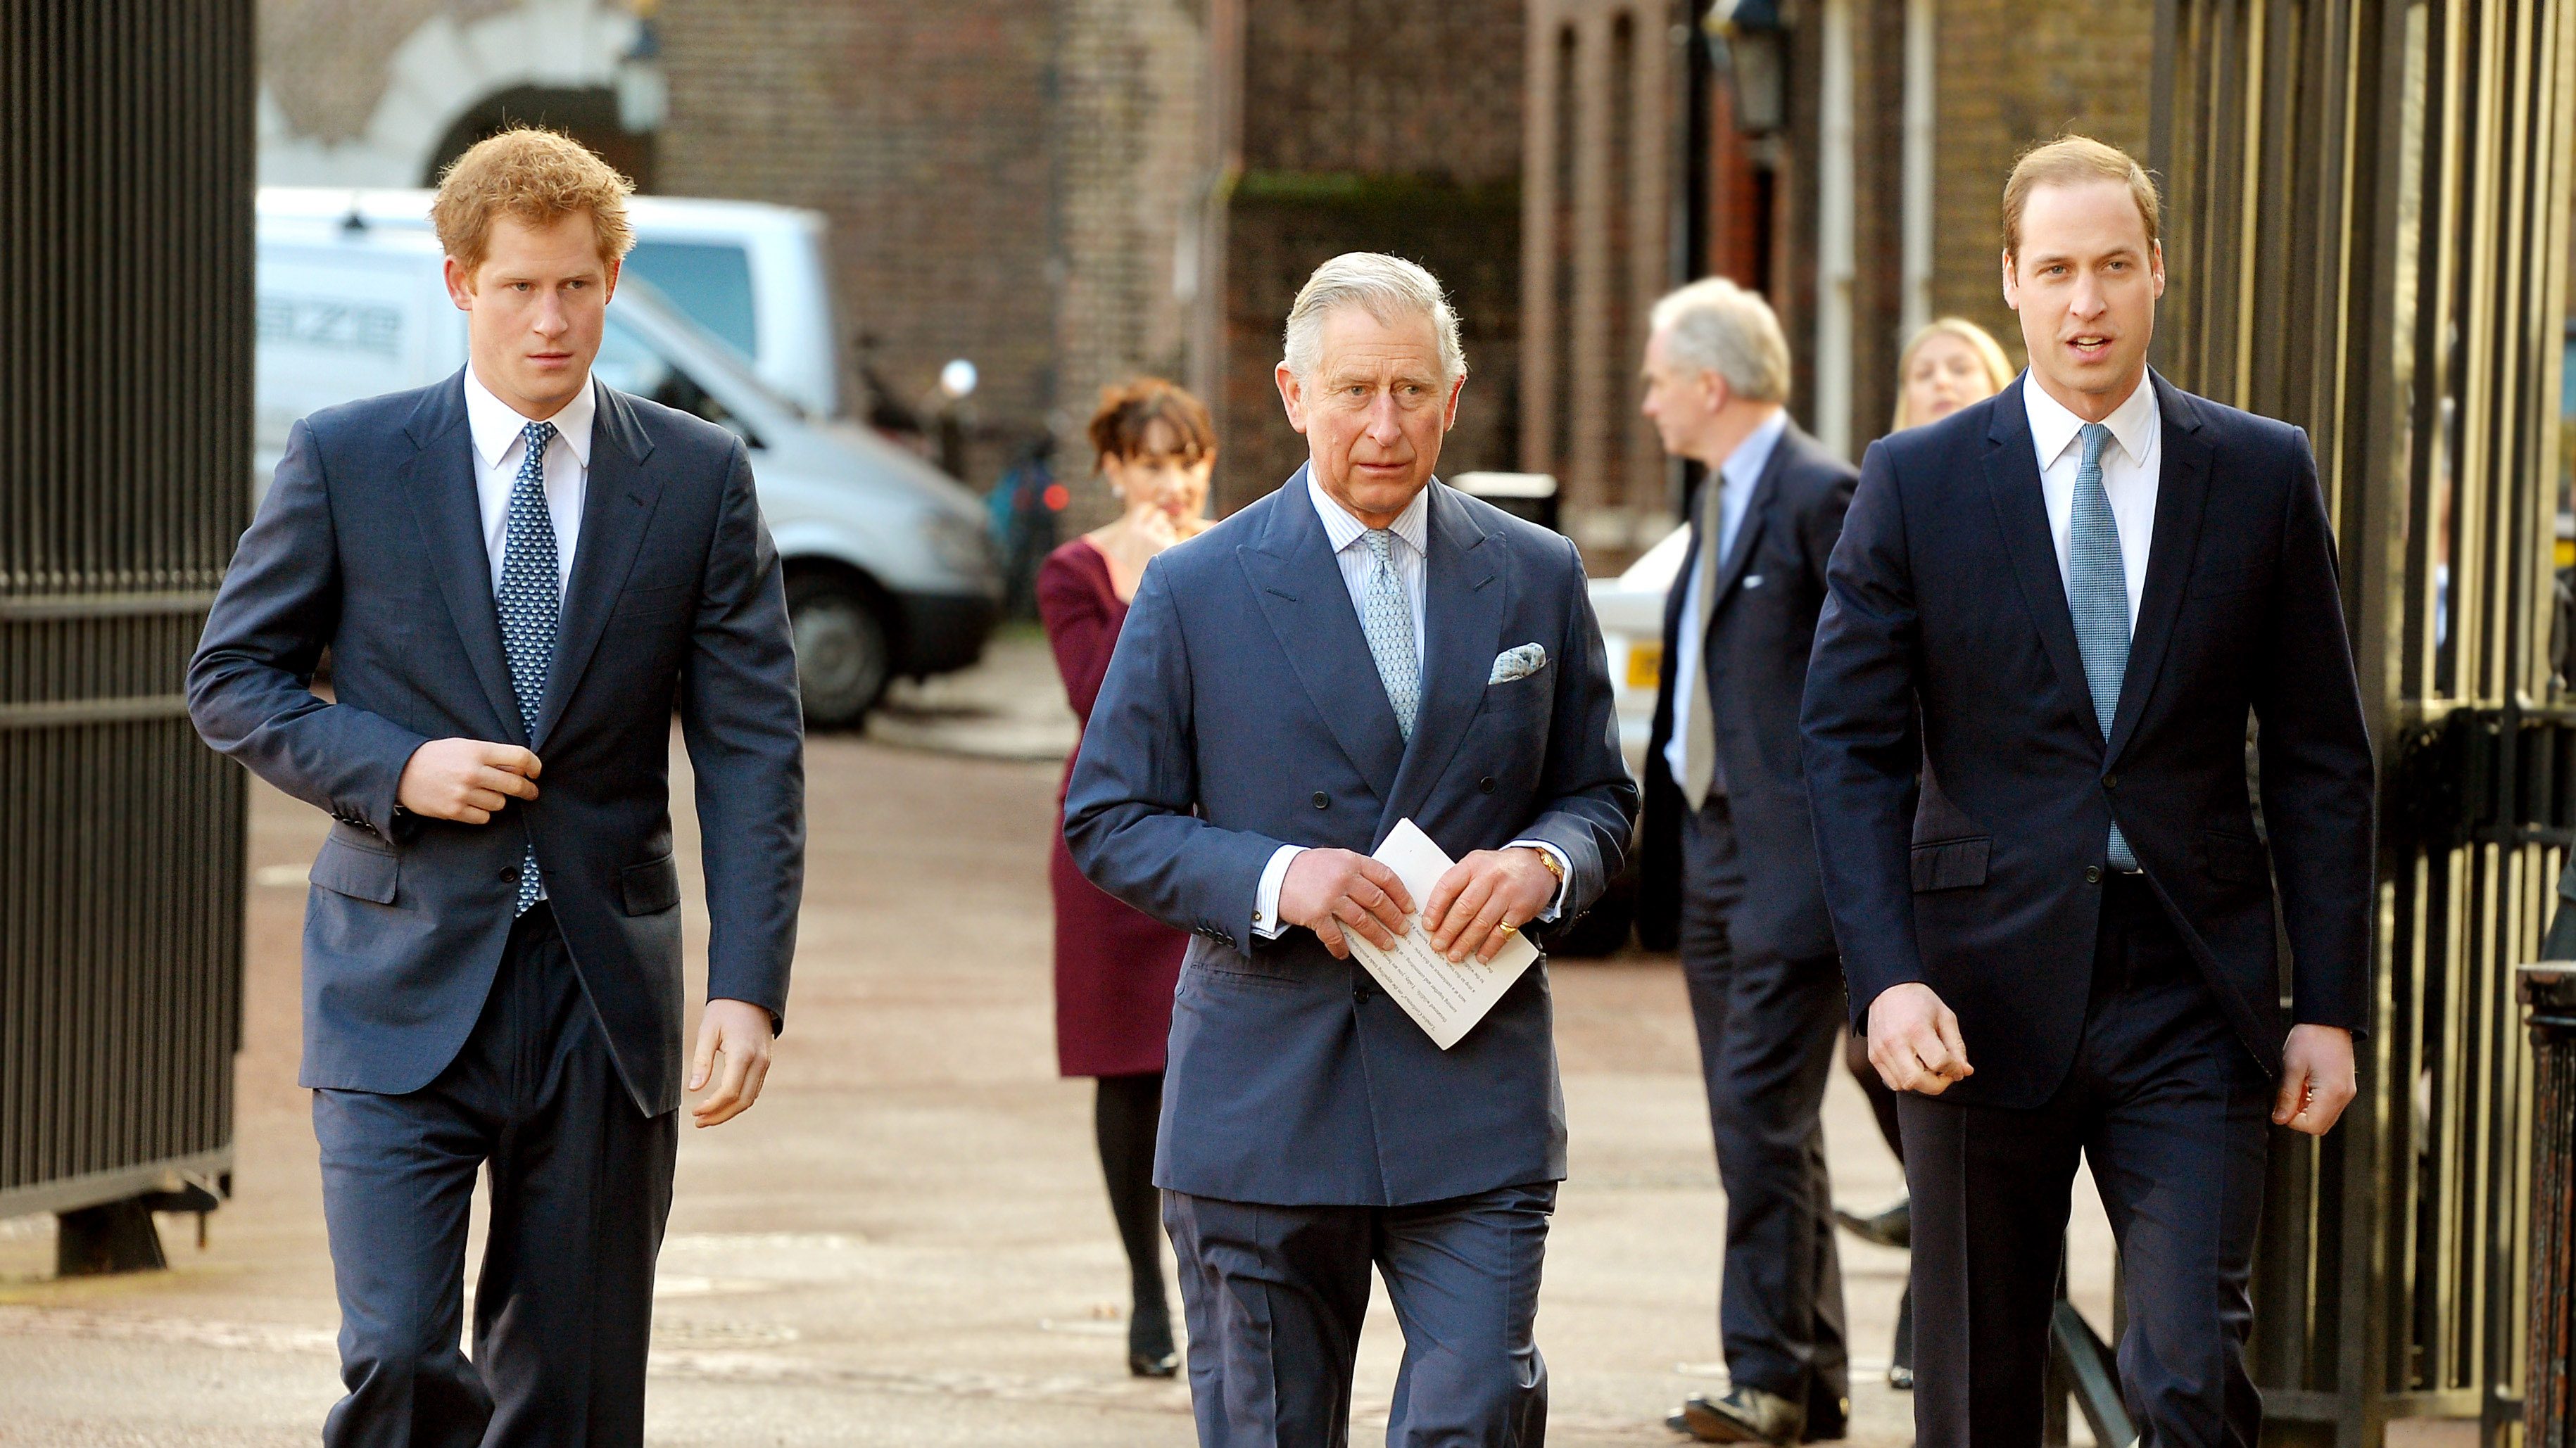 Károly herceg büszke Vilmos és Harry herceg globális felmelegedés kapcsán tett intézkedéseire